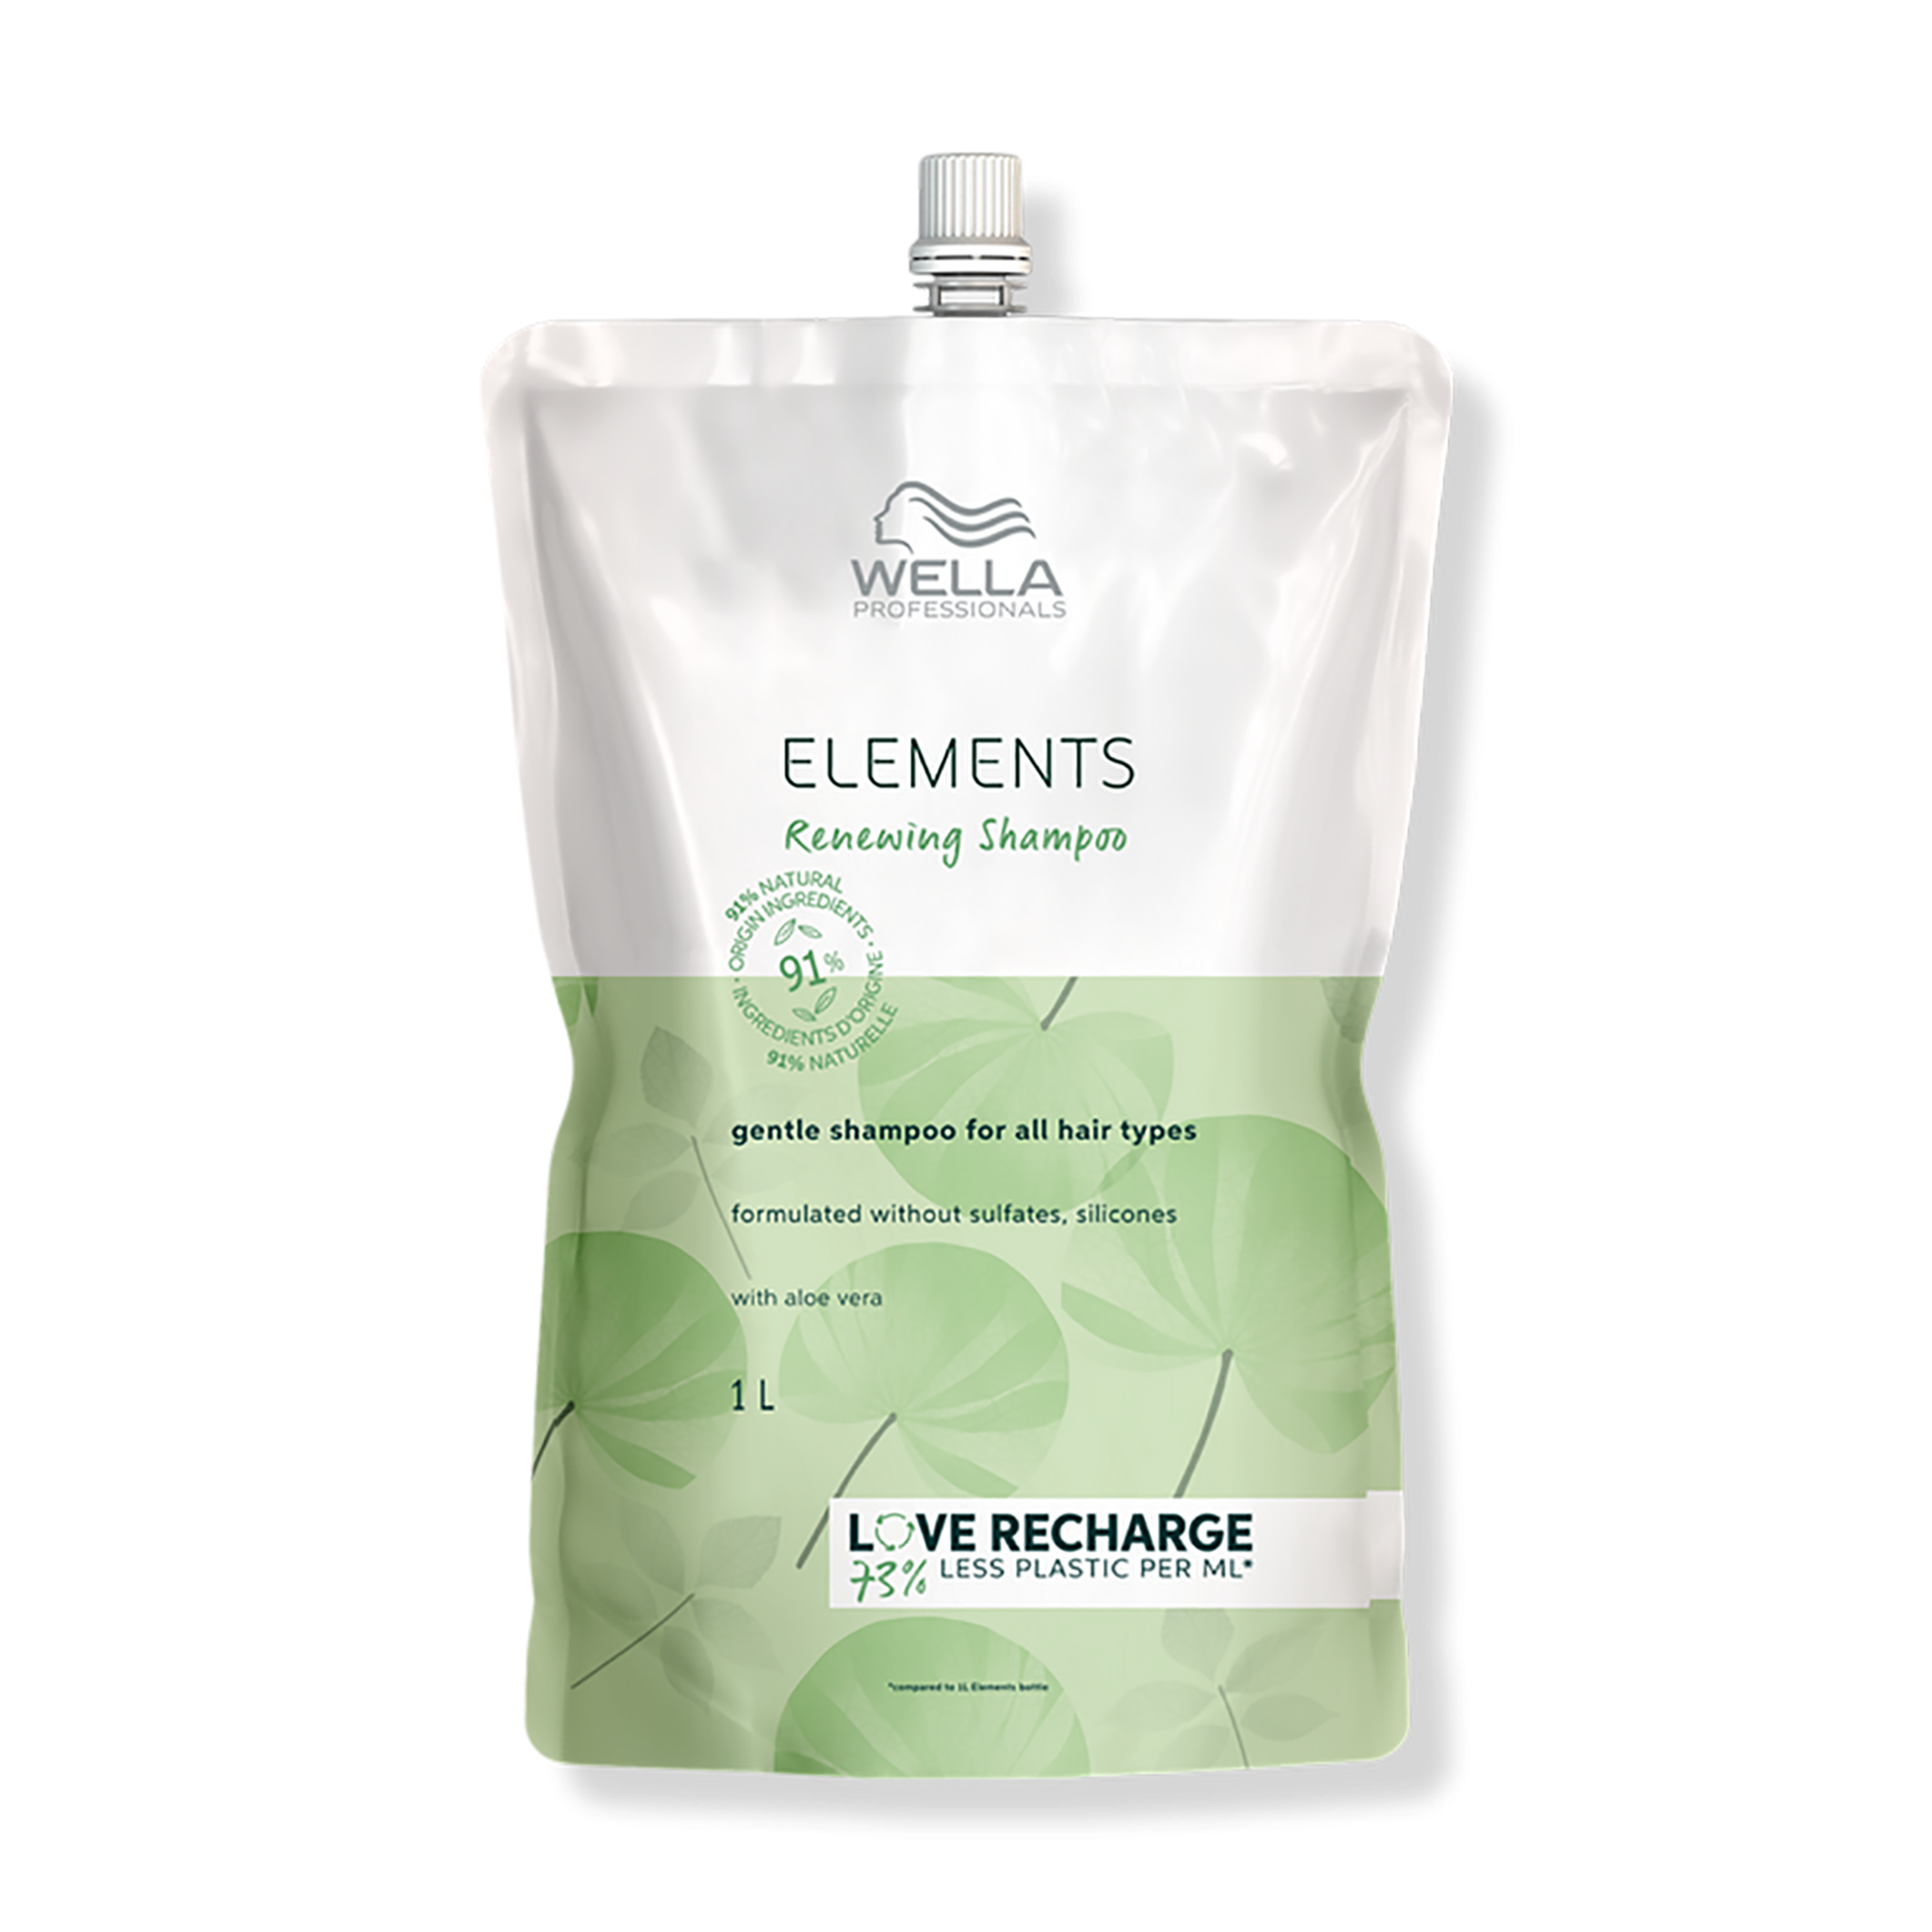 Wella Elements Renewing Shampoo Pouch - 33oz / 33.OZ